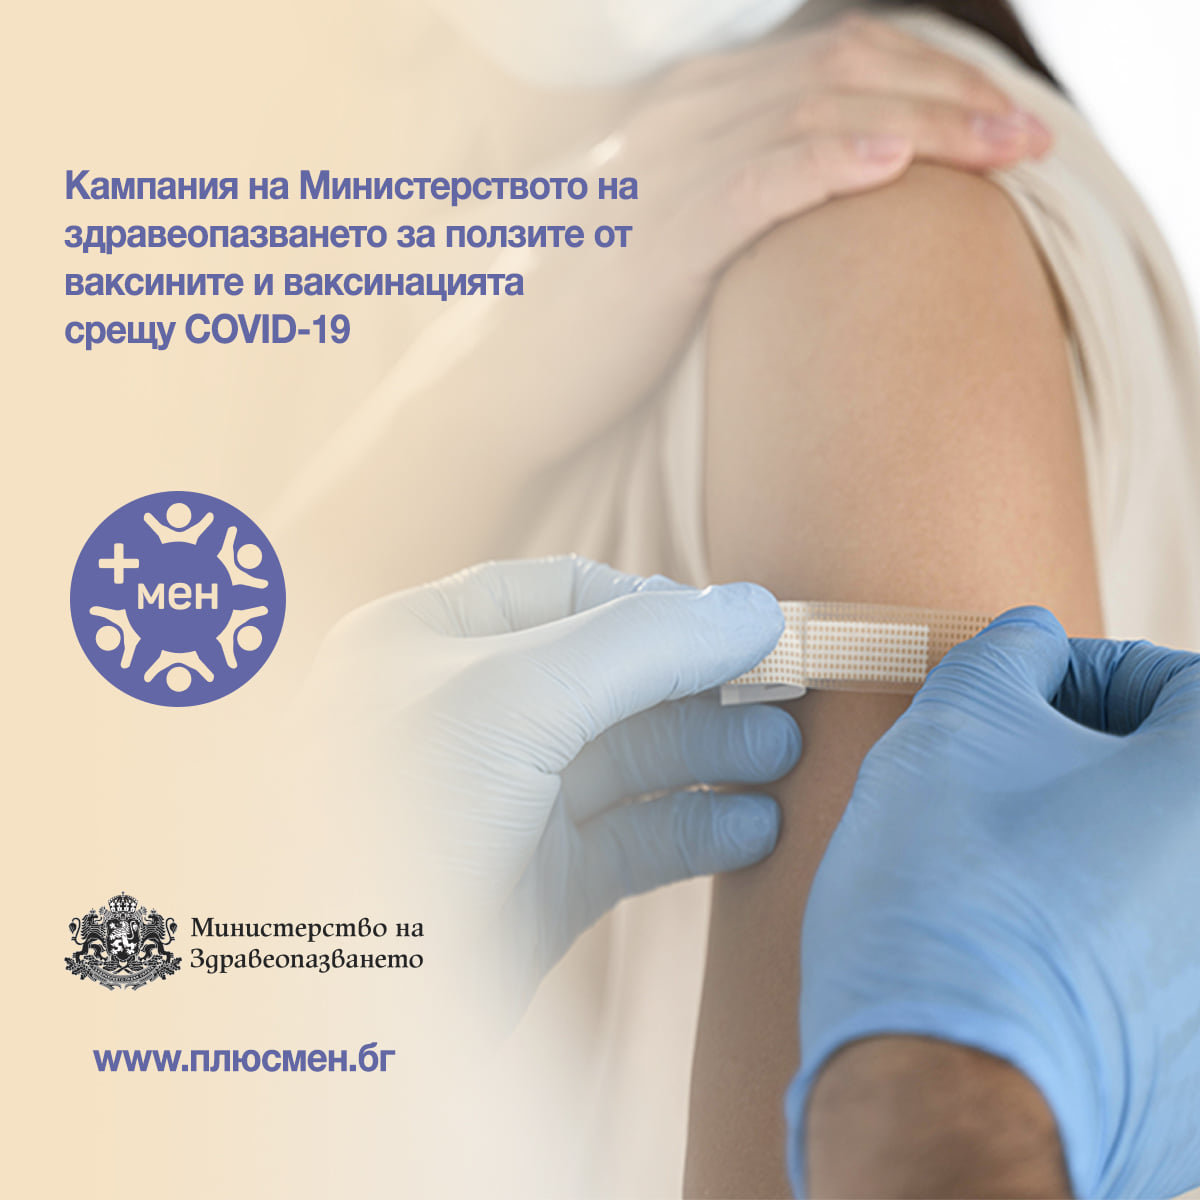 53 7 от българите смятат че липсва достоверна информация за ваксините